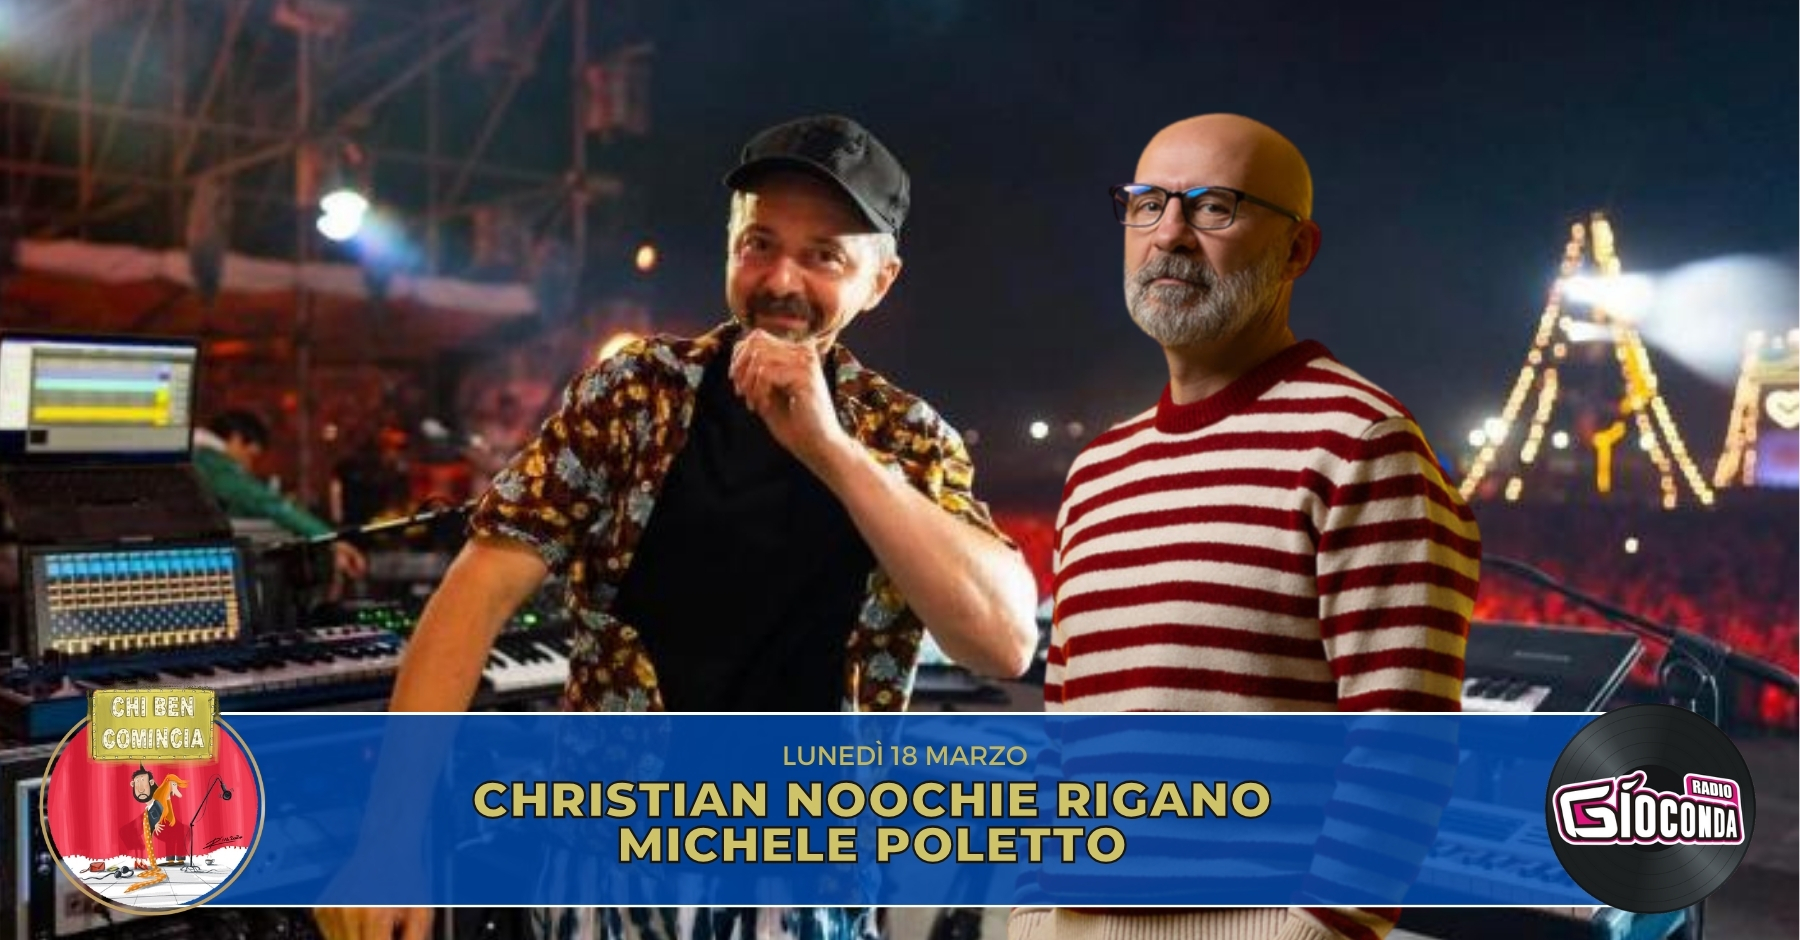 Il producer e musicista Christian Rigano e il cantautore e disc-jockey Michele Poletto sono gli ospiti della nuova puntata di “Chi ben comincia” in onda lunedì 18 marzo alle 18.00.